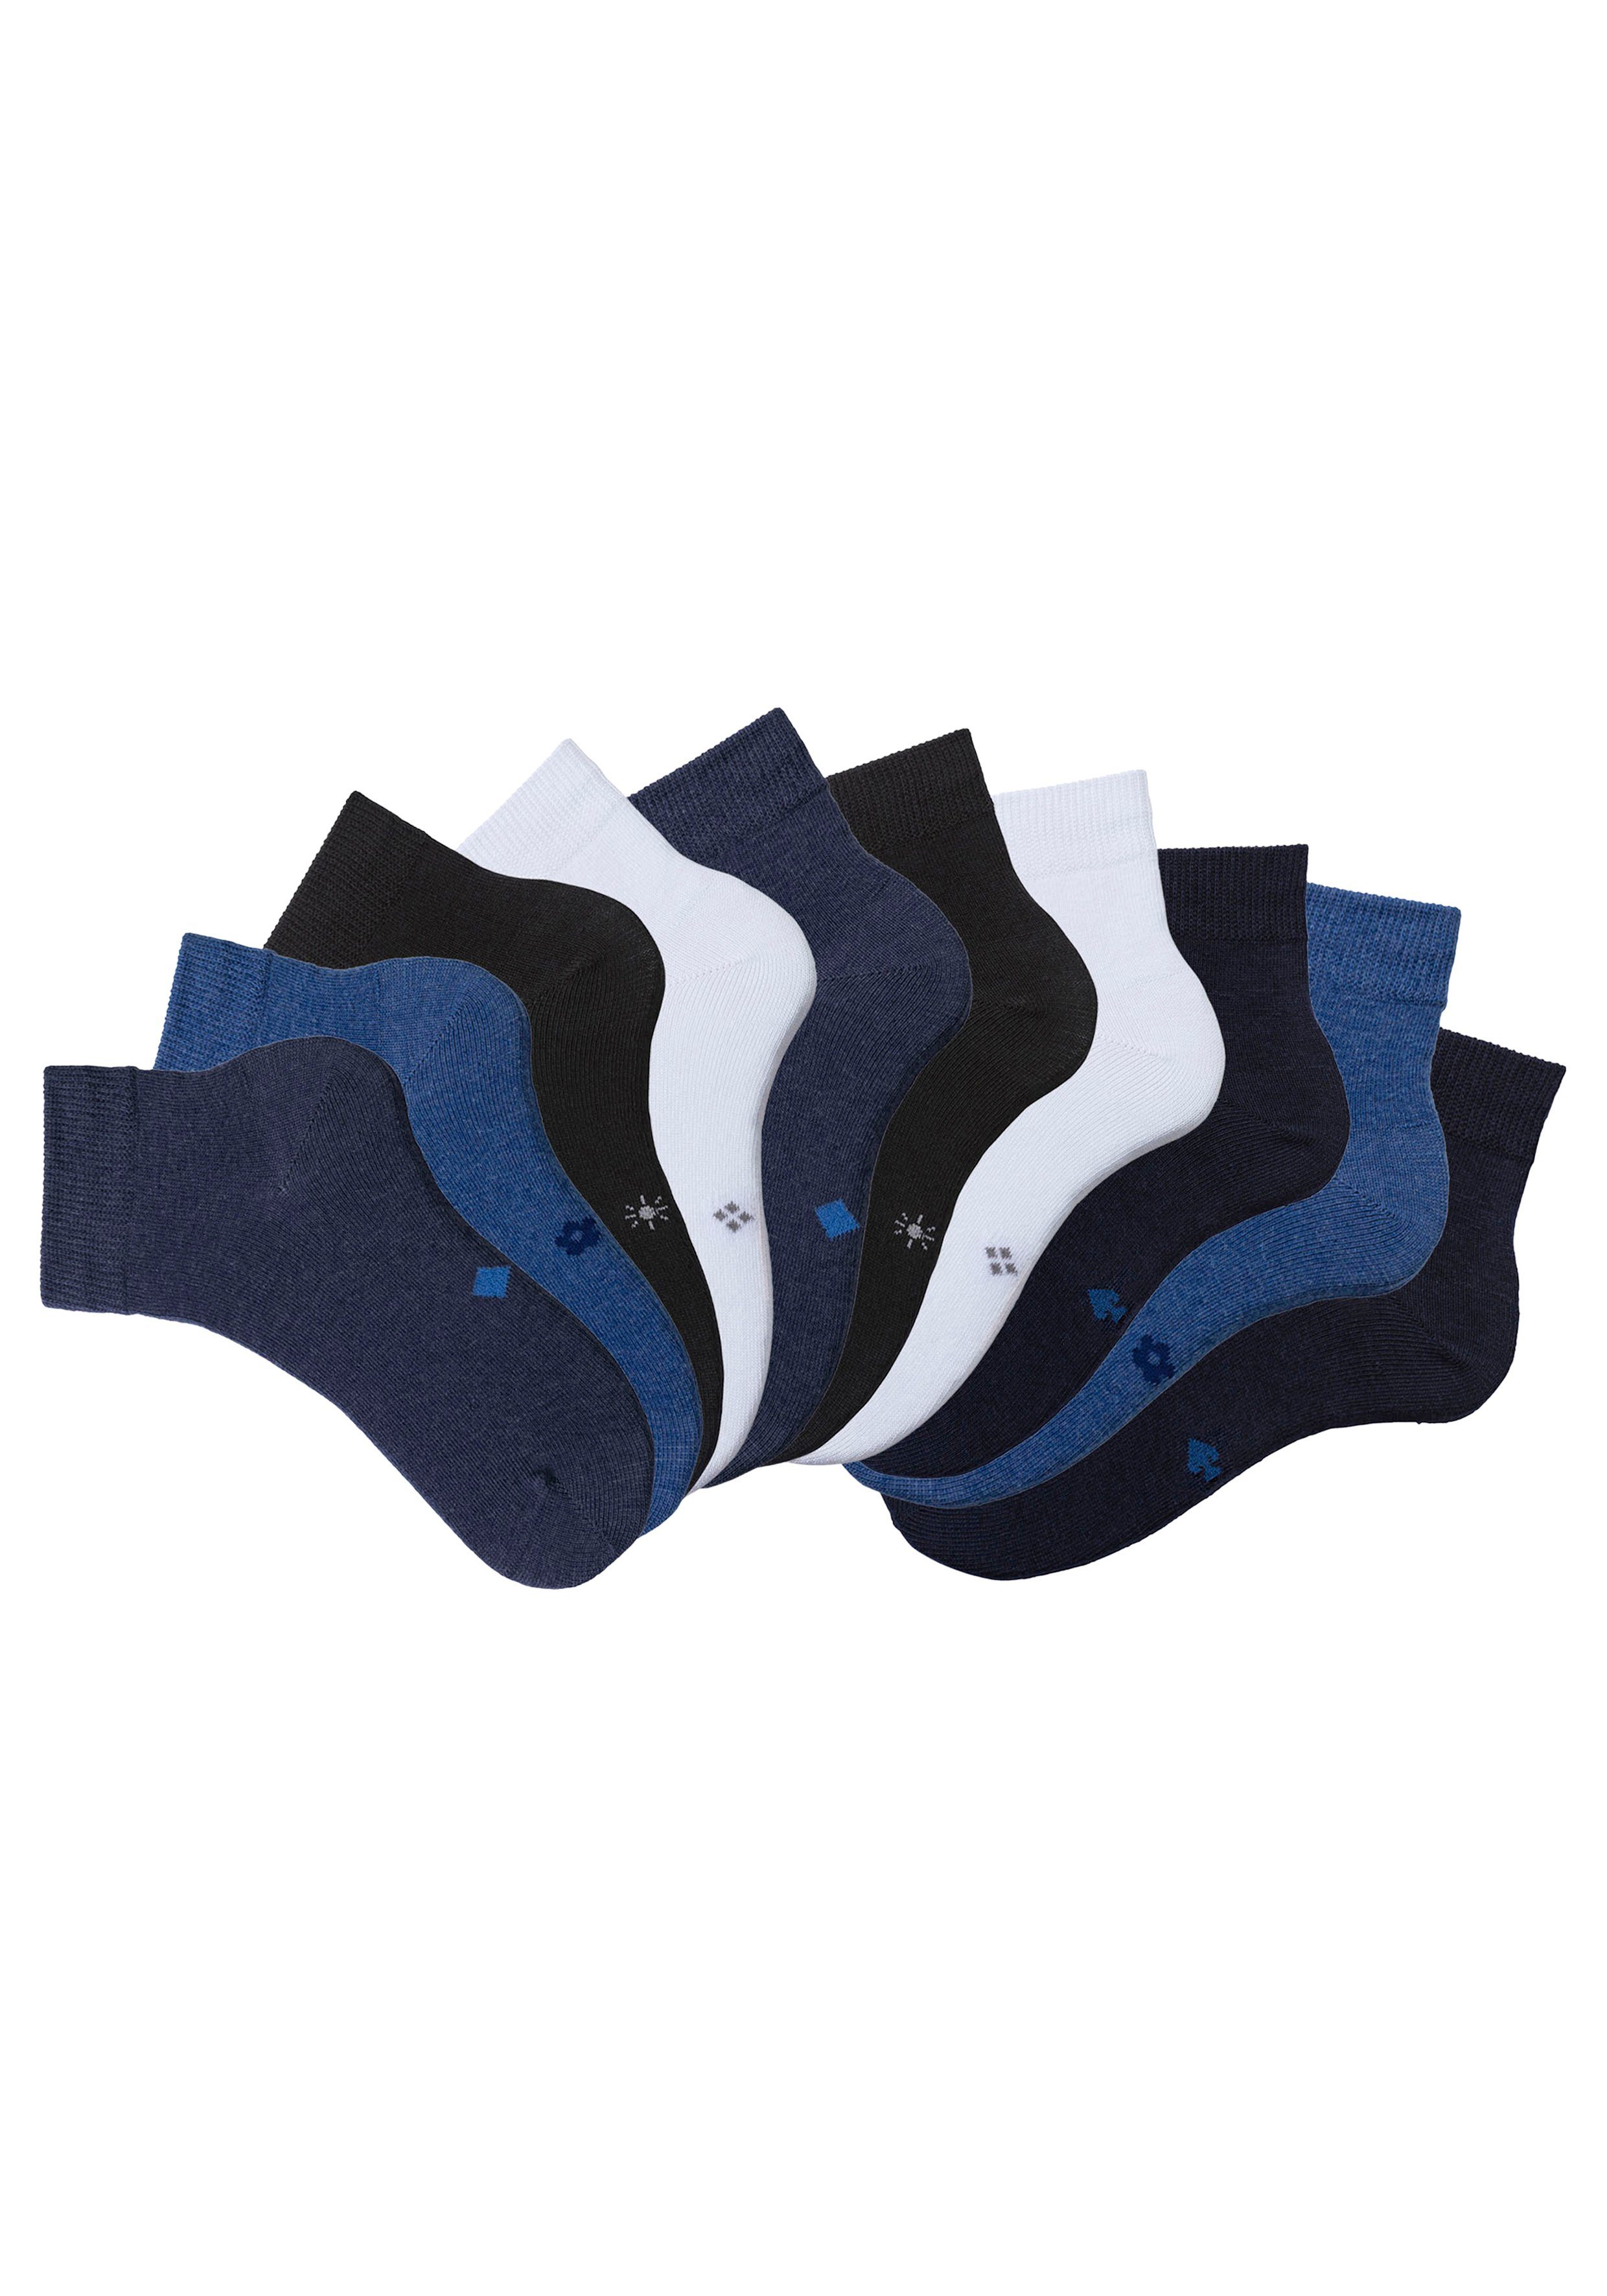 H.I.S Kurzsocken (Packung, 10-Paar) 2x 2x 2x Symbolen jeans blau, blau eingestrickten mit 2x meliert, weiß meliert, schwarz, 2x